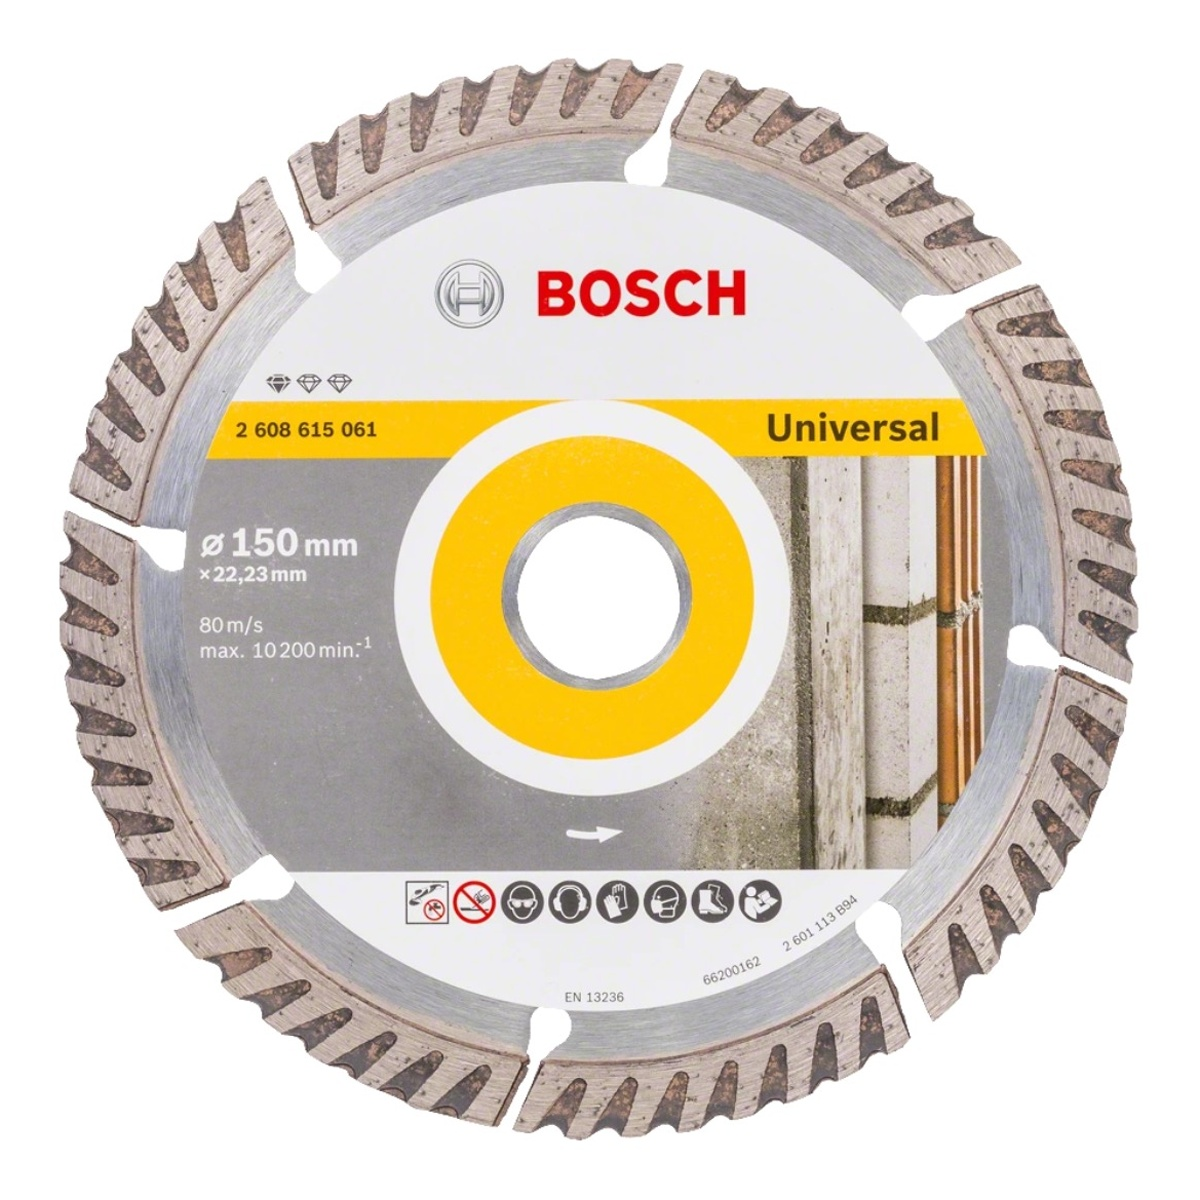 BOSCH PROFESSIONAL Diamanttrennscheibe , Bosch Blua Standard for